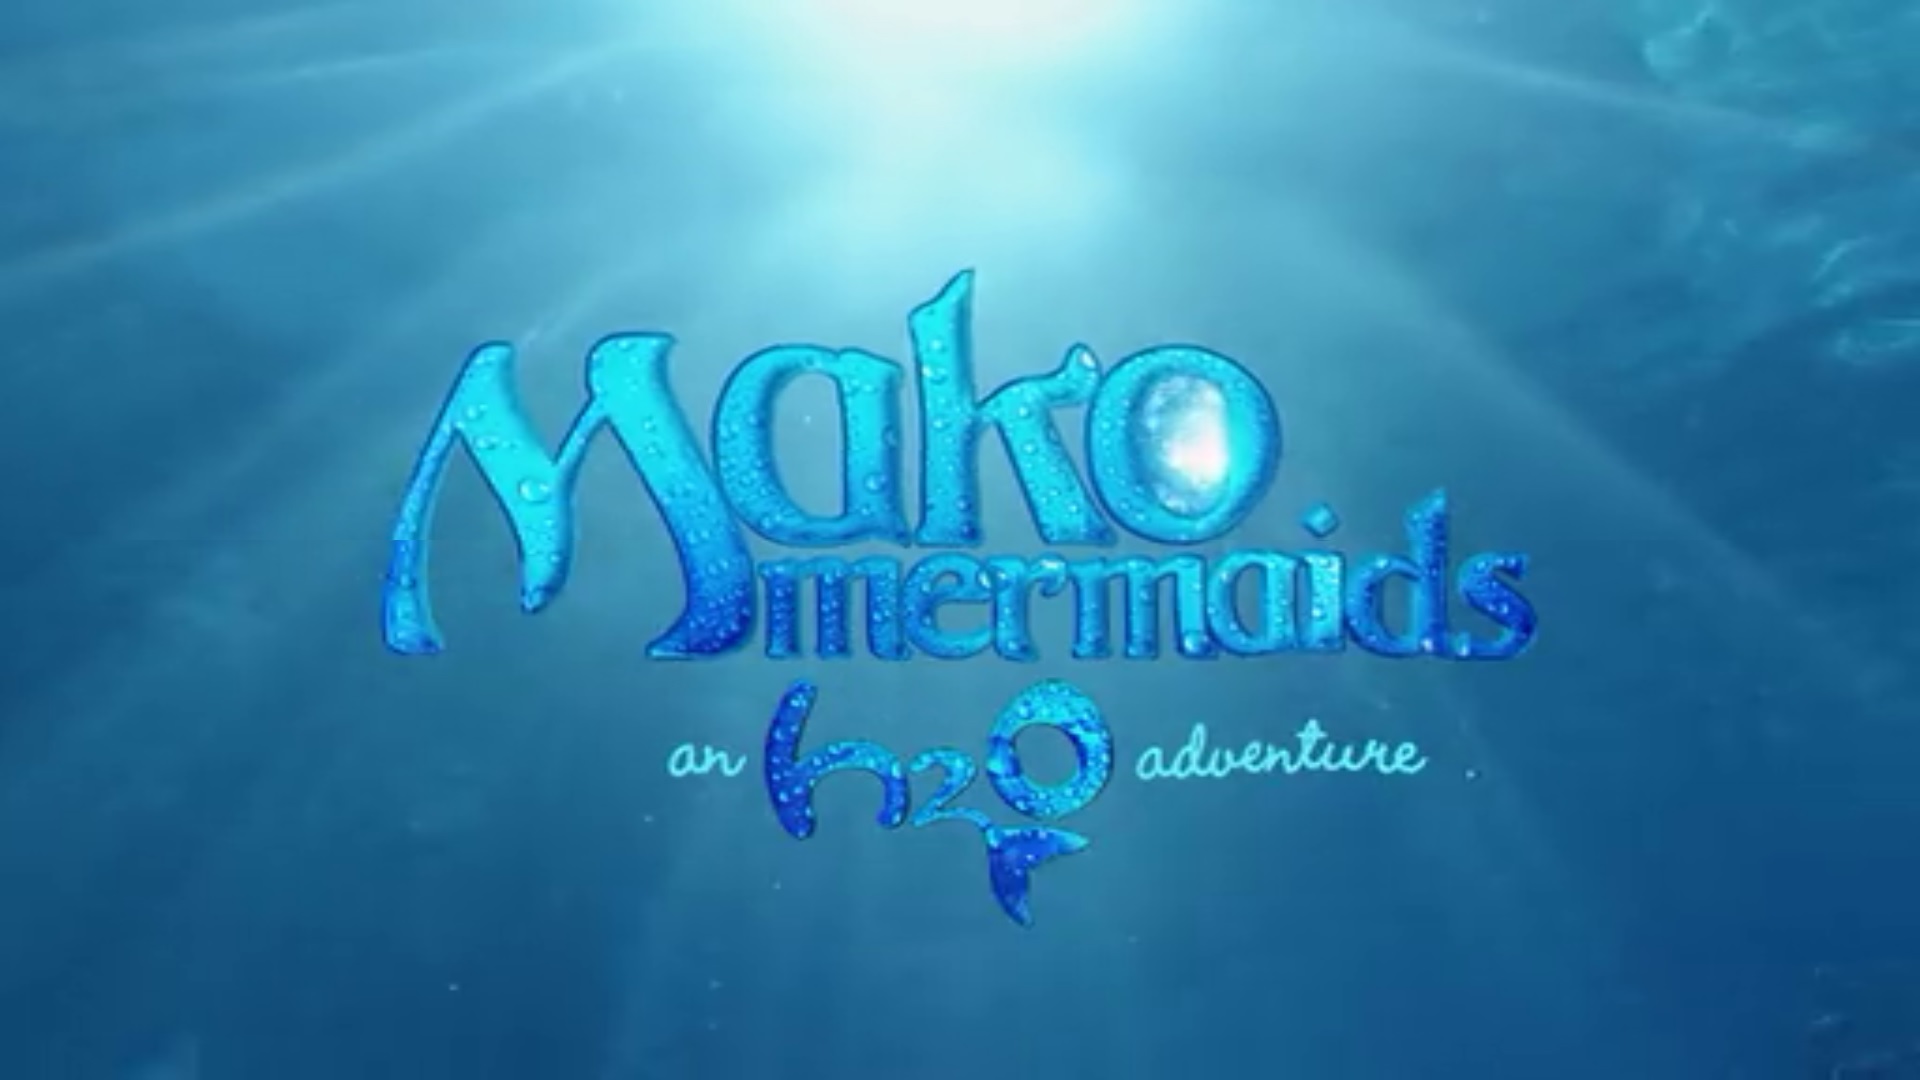 Behind the scenes  Mako mermaids, Mermaid pictures, H2o mermaids